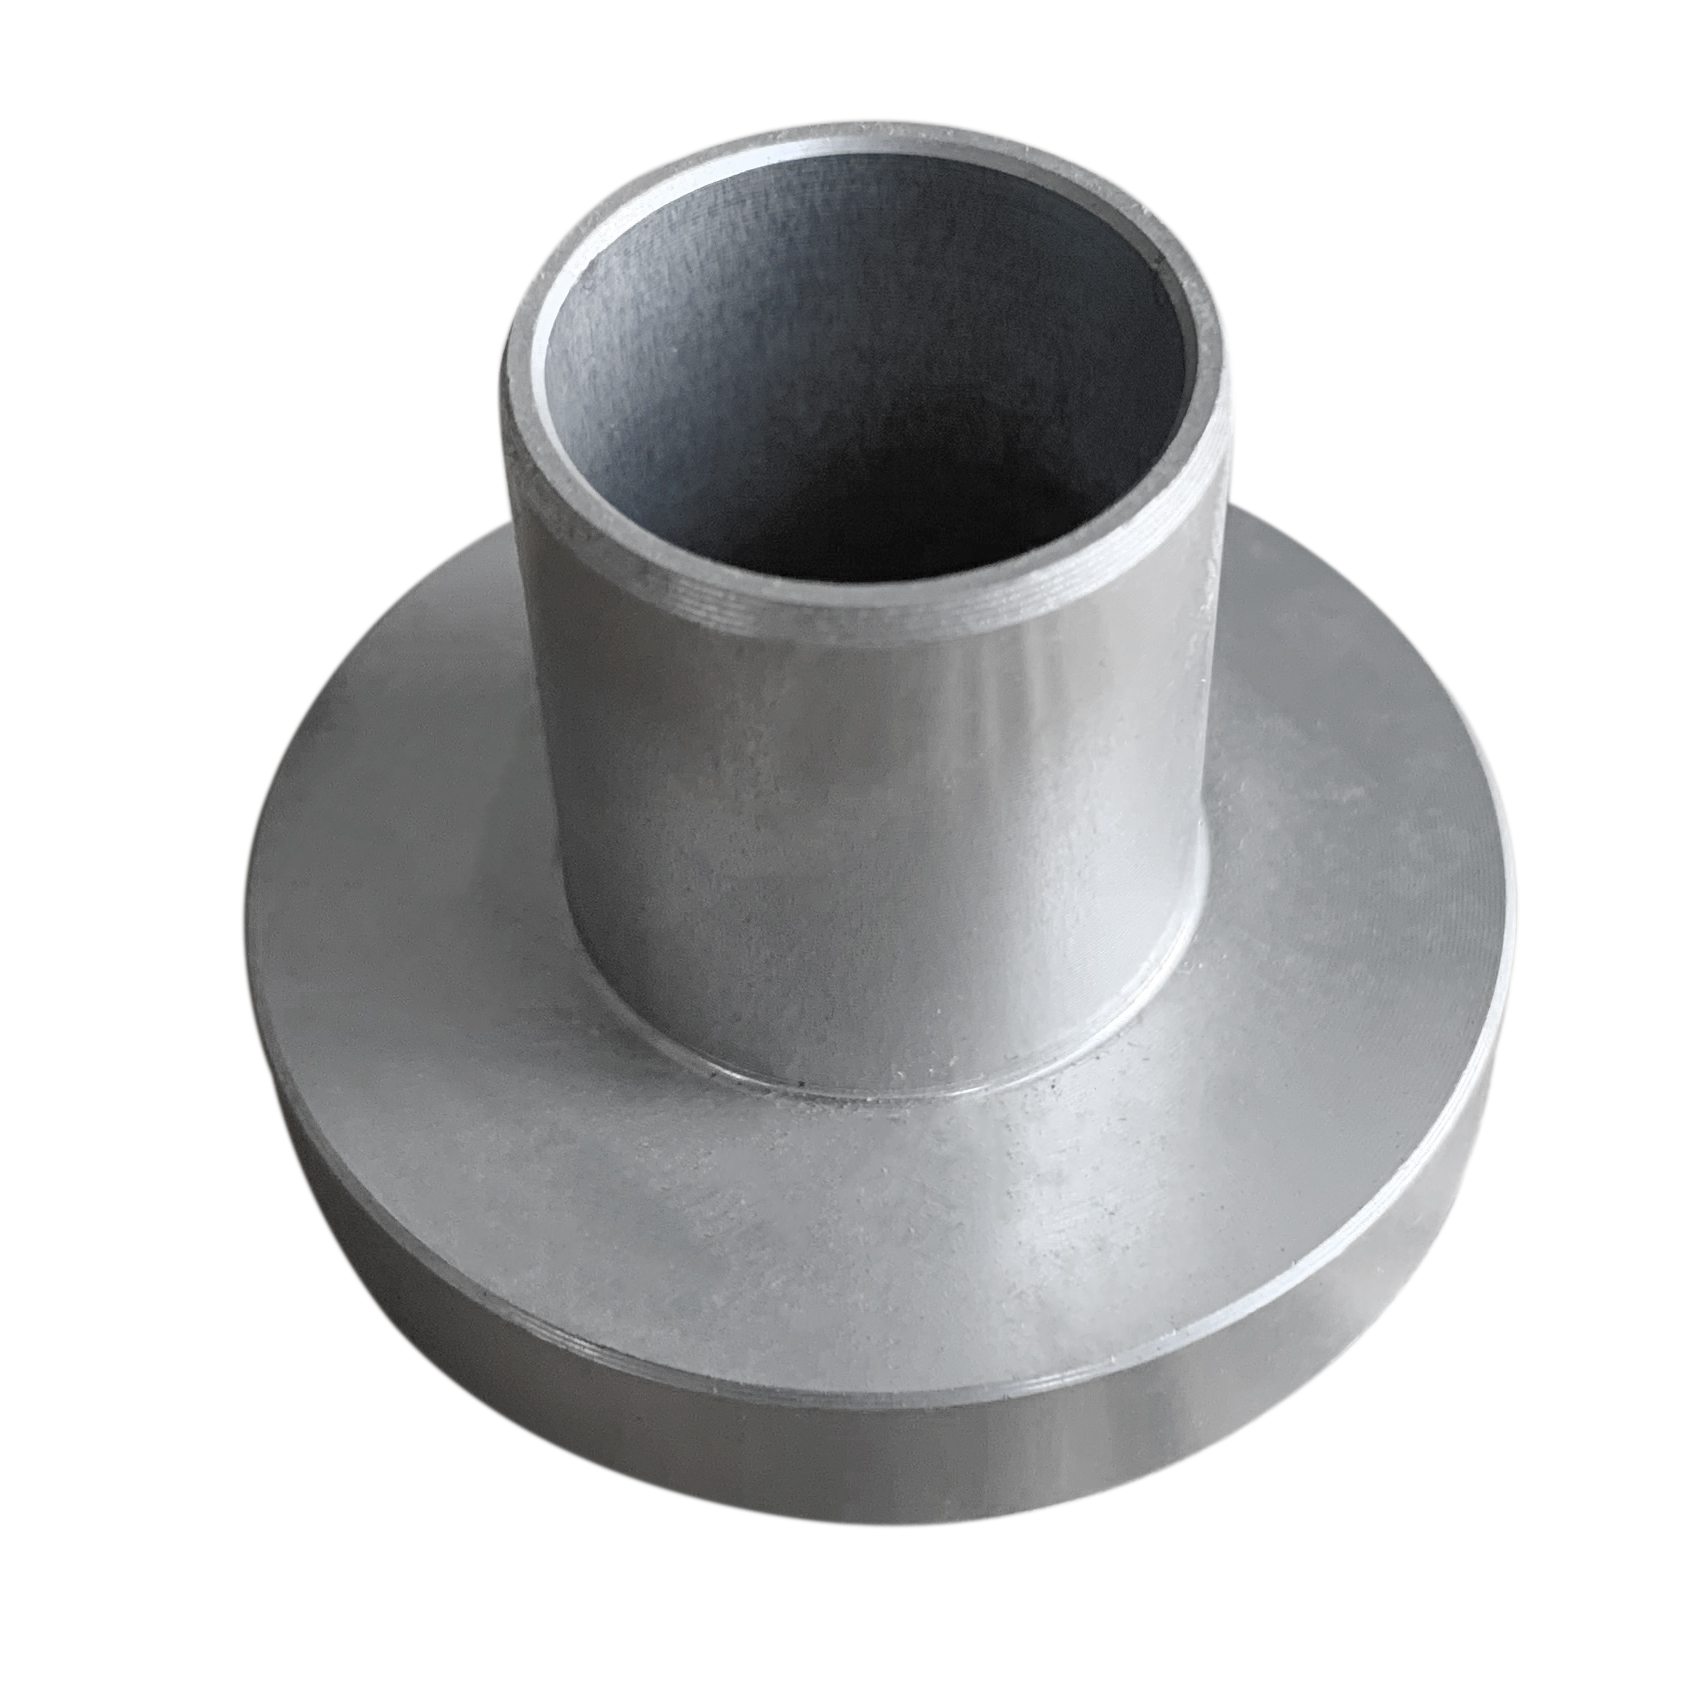 Round Durable Hardware Tool Aluminum Manganese Alloy Cnc Part